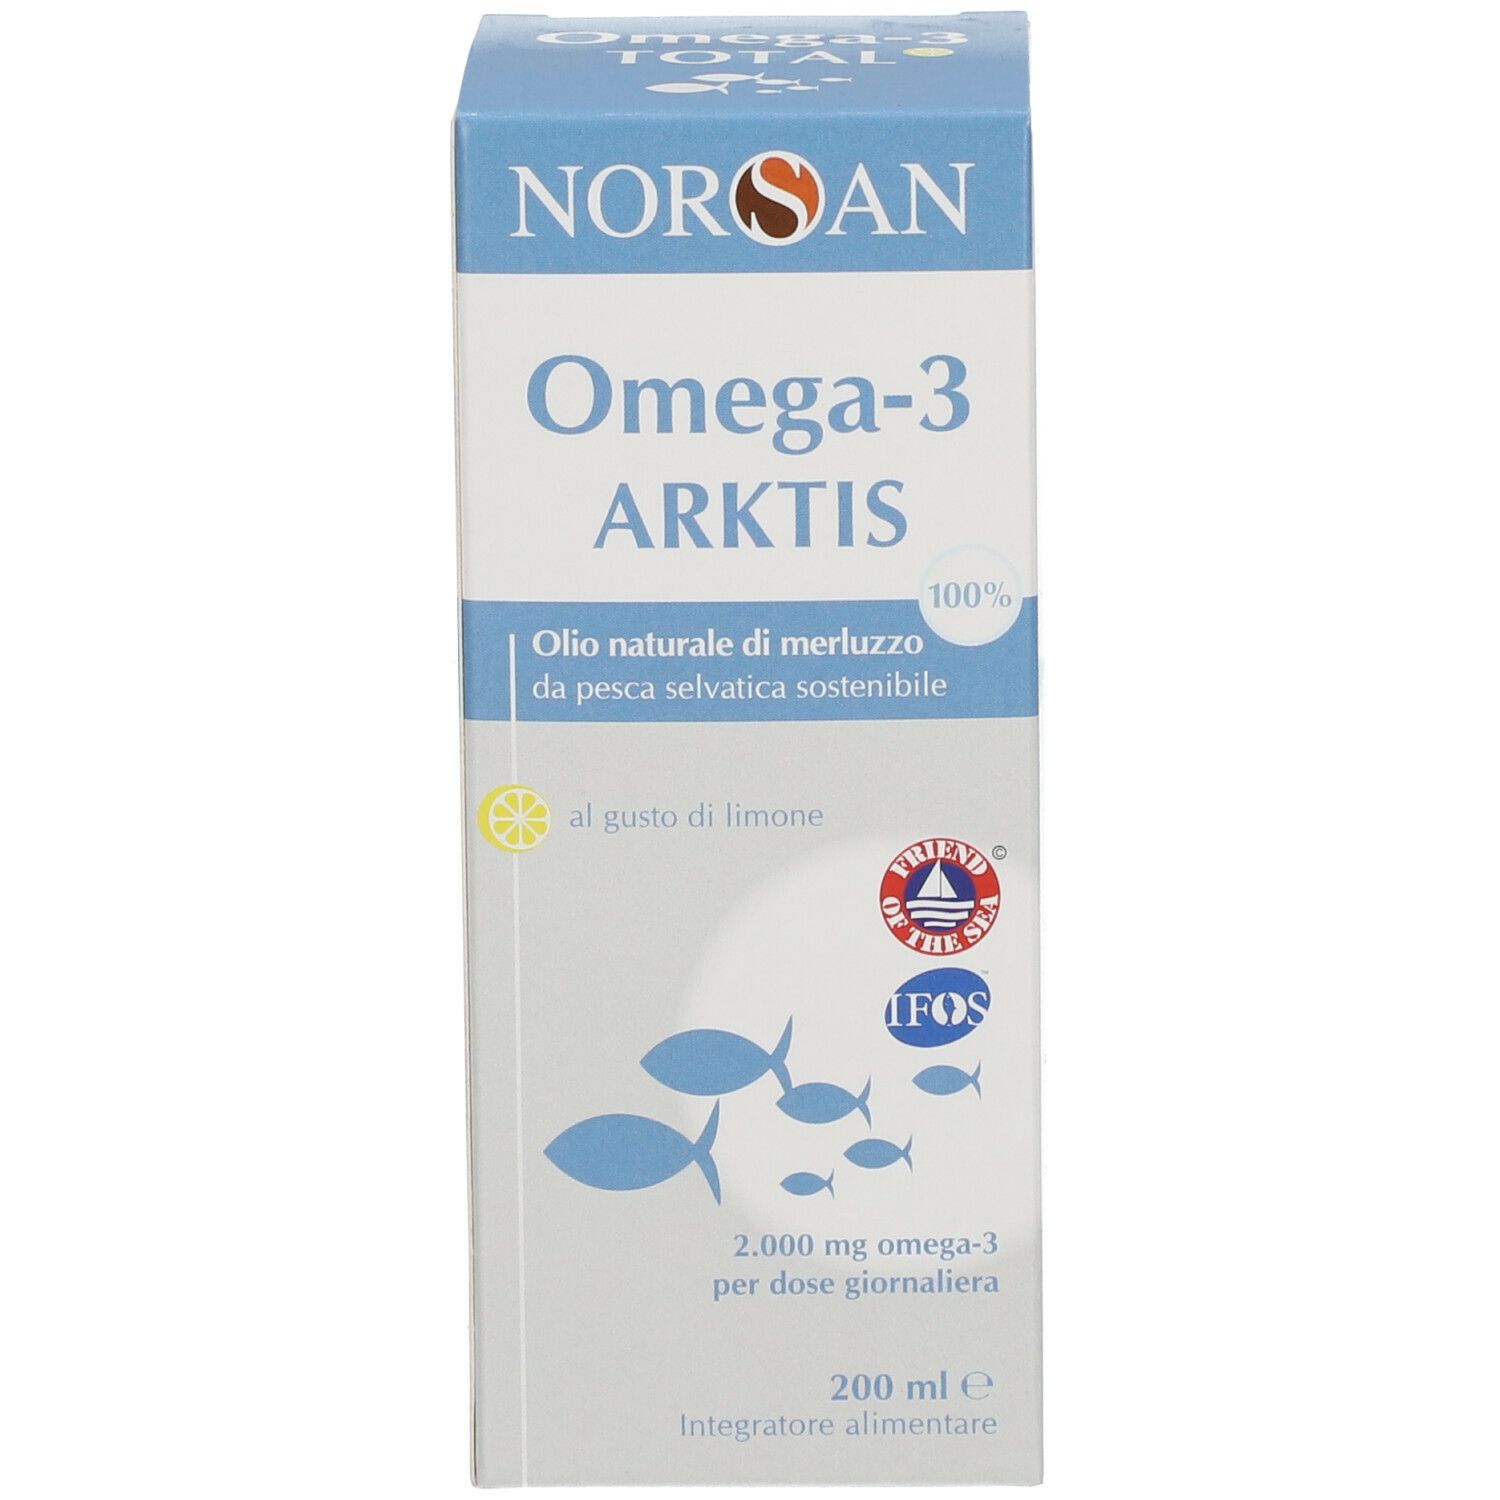 NORSAN Omega-3 Arktis